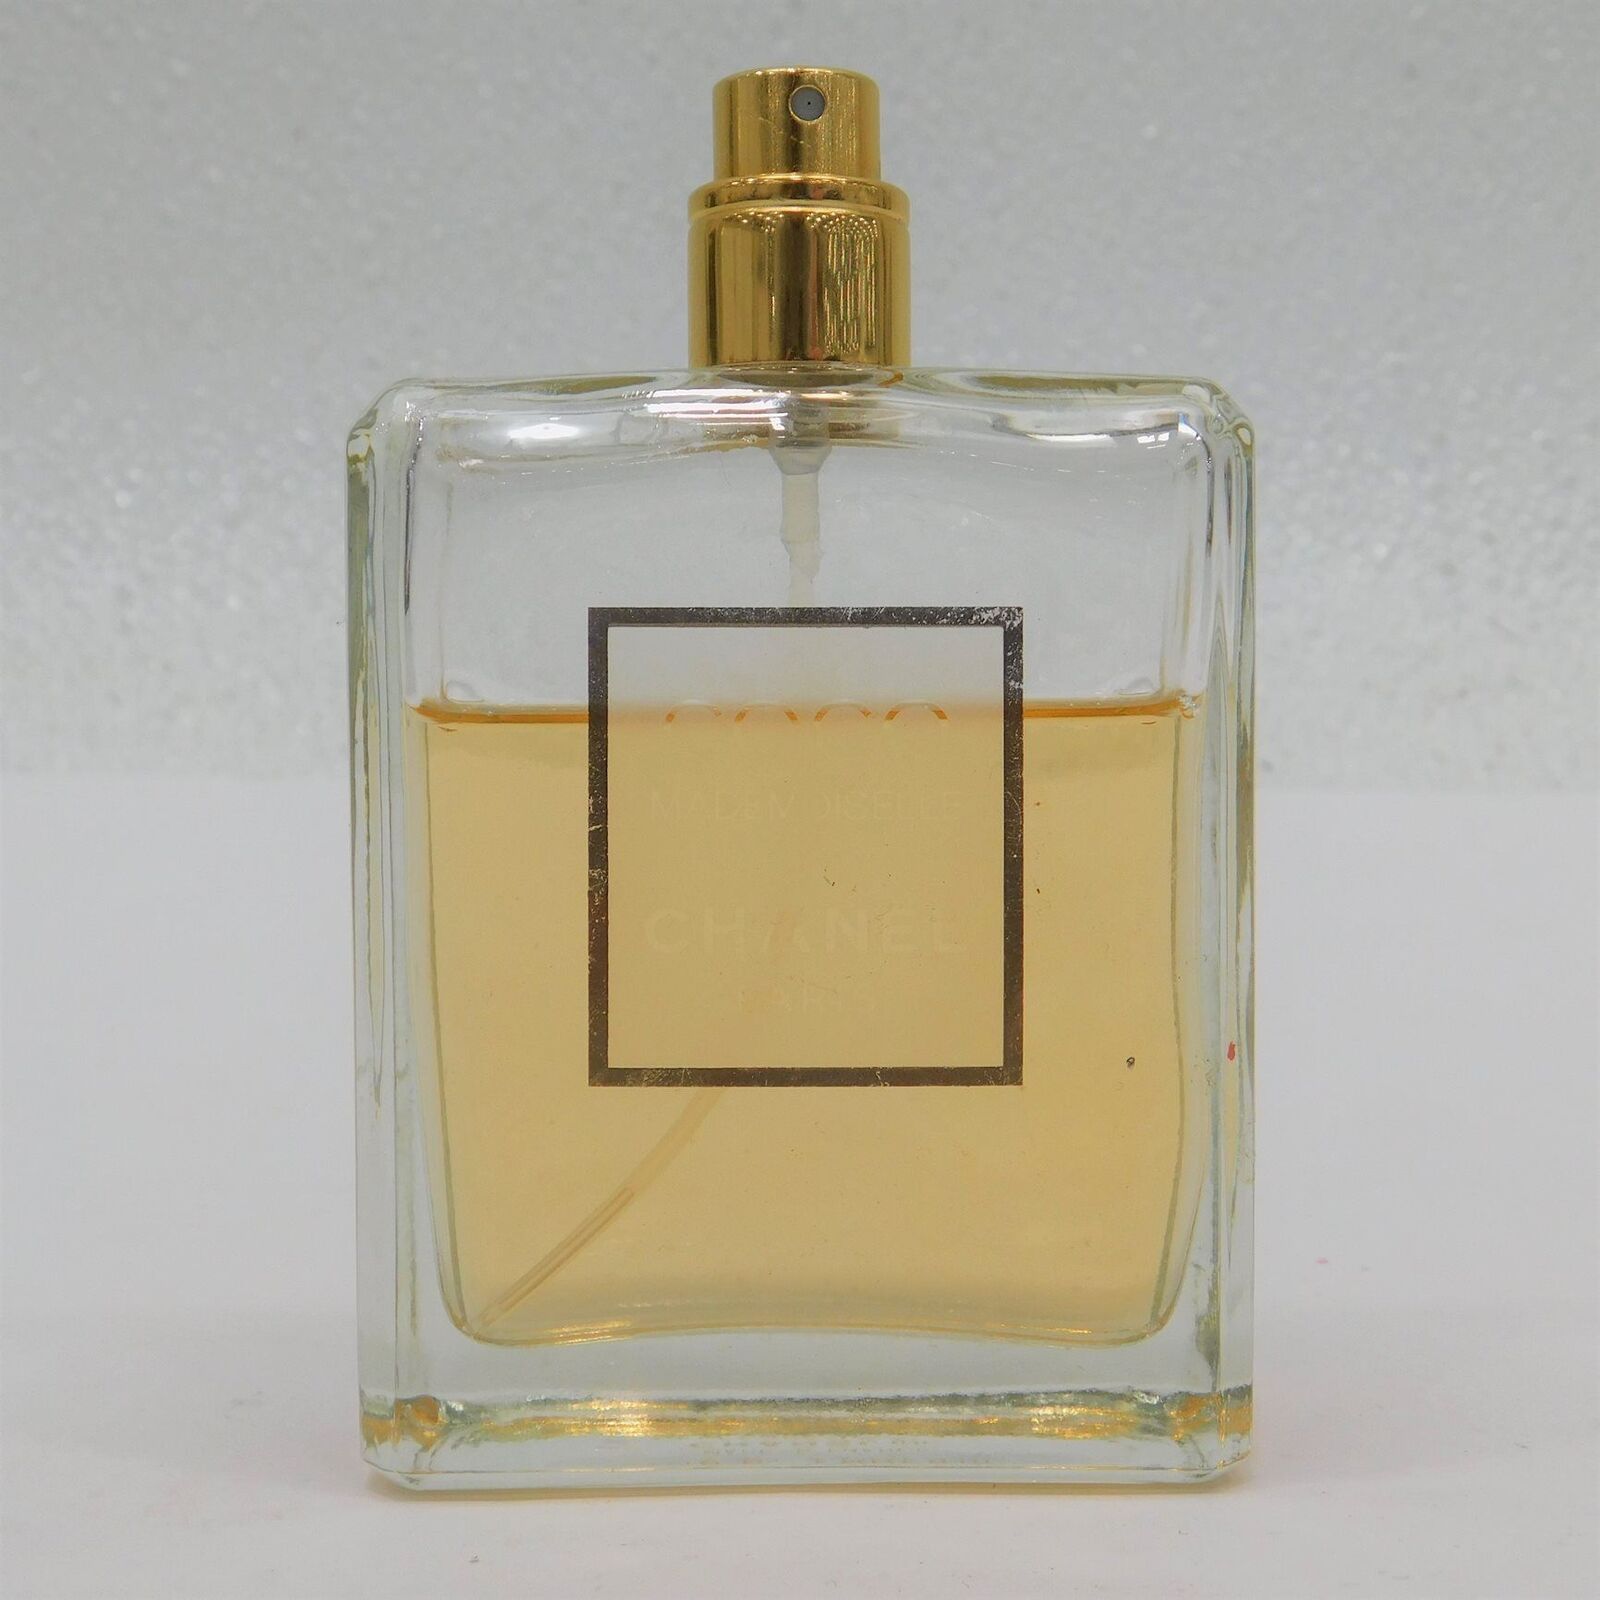 Coco Mademoiselle Chanel Paris Perfume-Partial Bottle